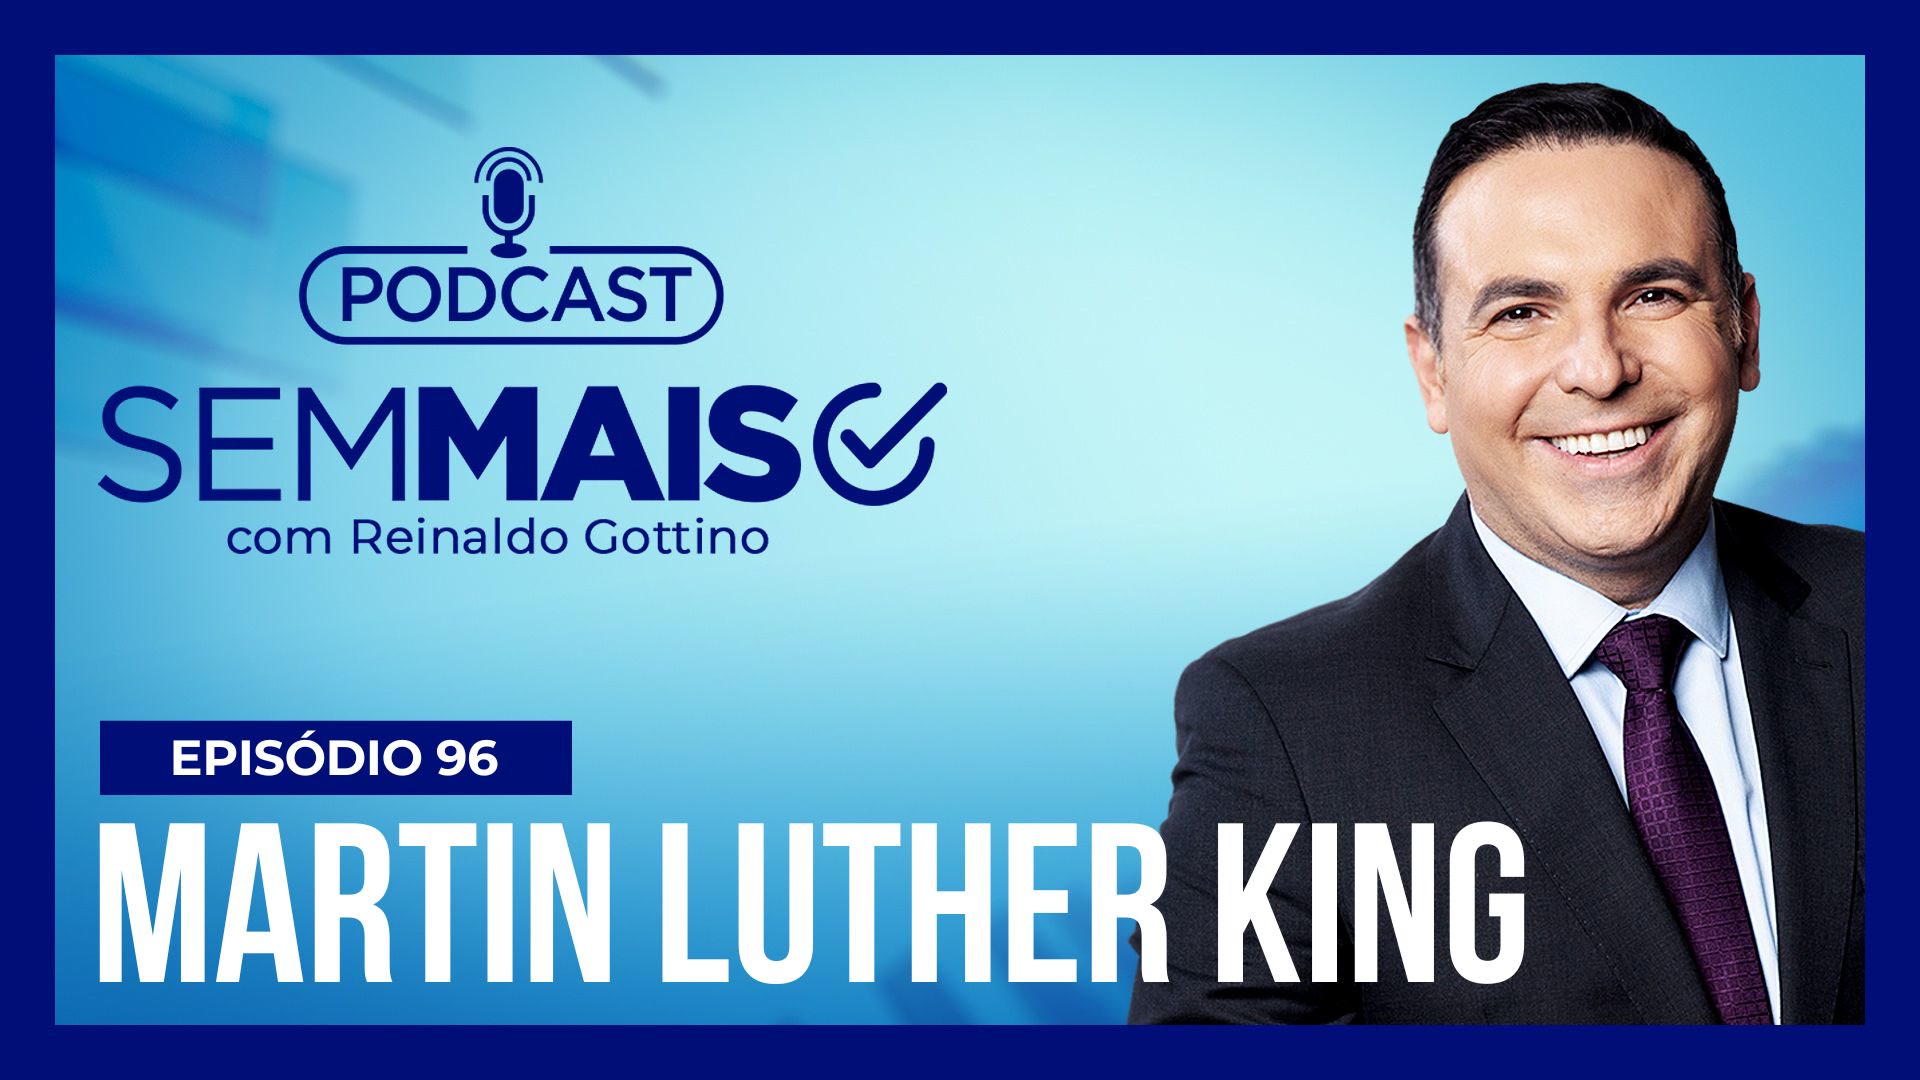 Vídeo: Podcast Sem Mais : A importância de relembrar o legado de Martin Luther King